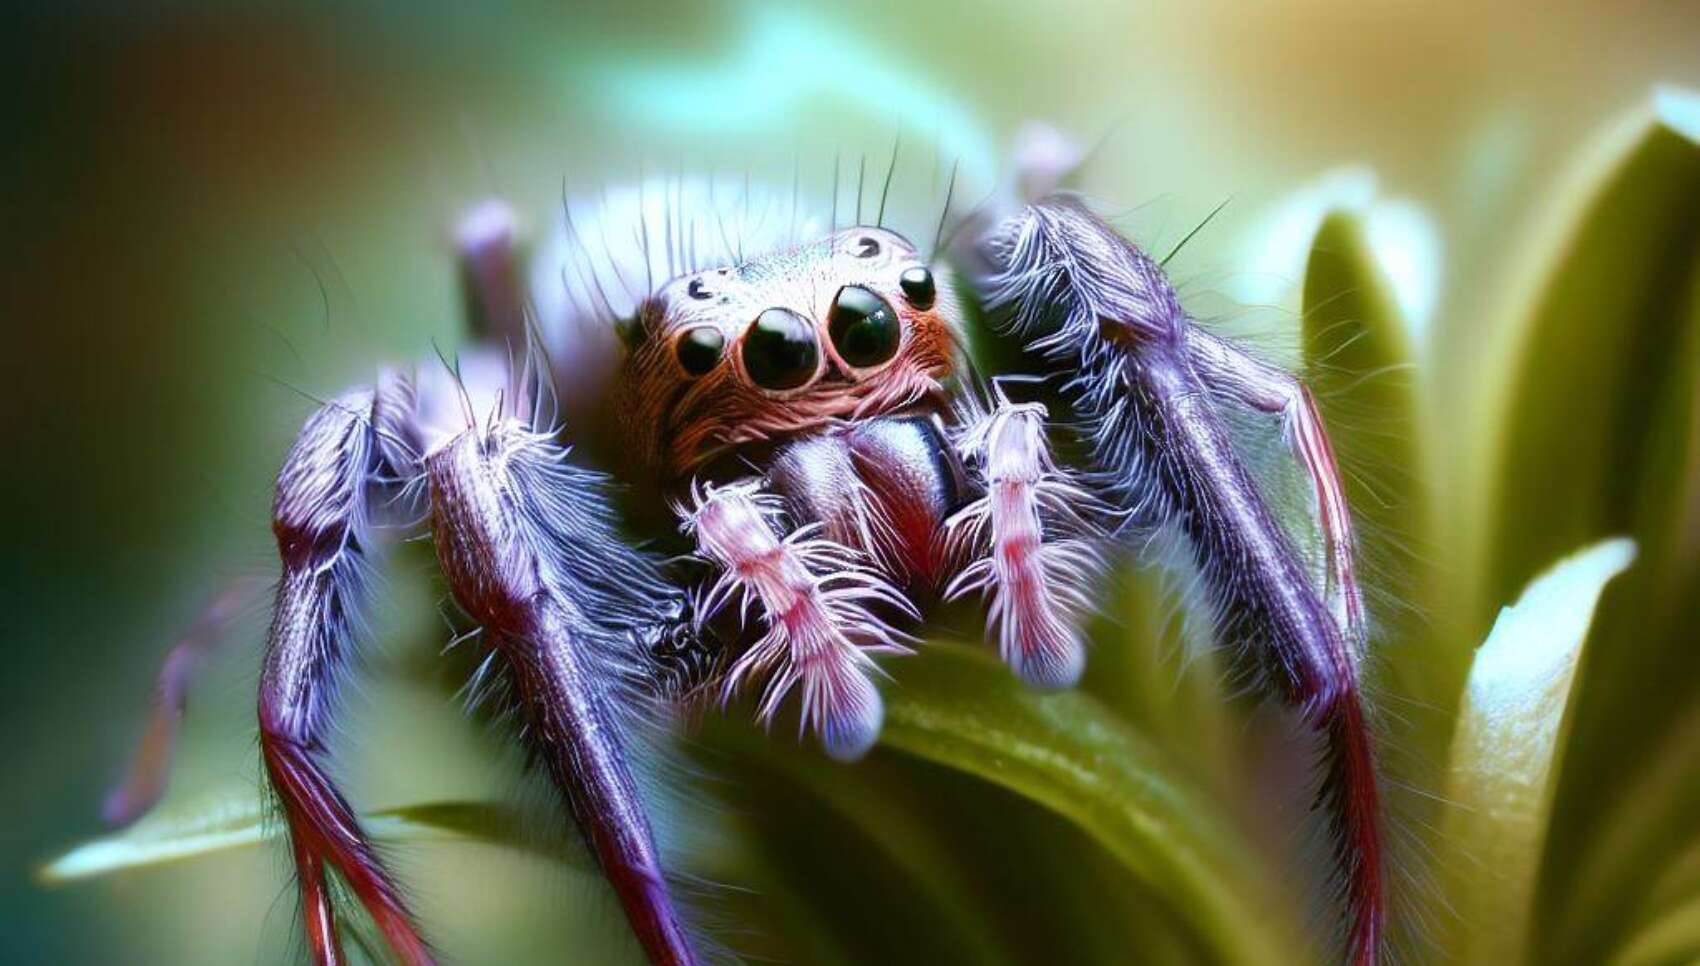 L’incroyable stratégie de cette araignée pour tromper ses prédateurs